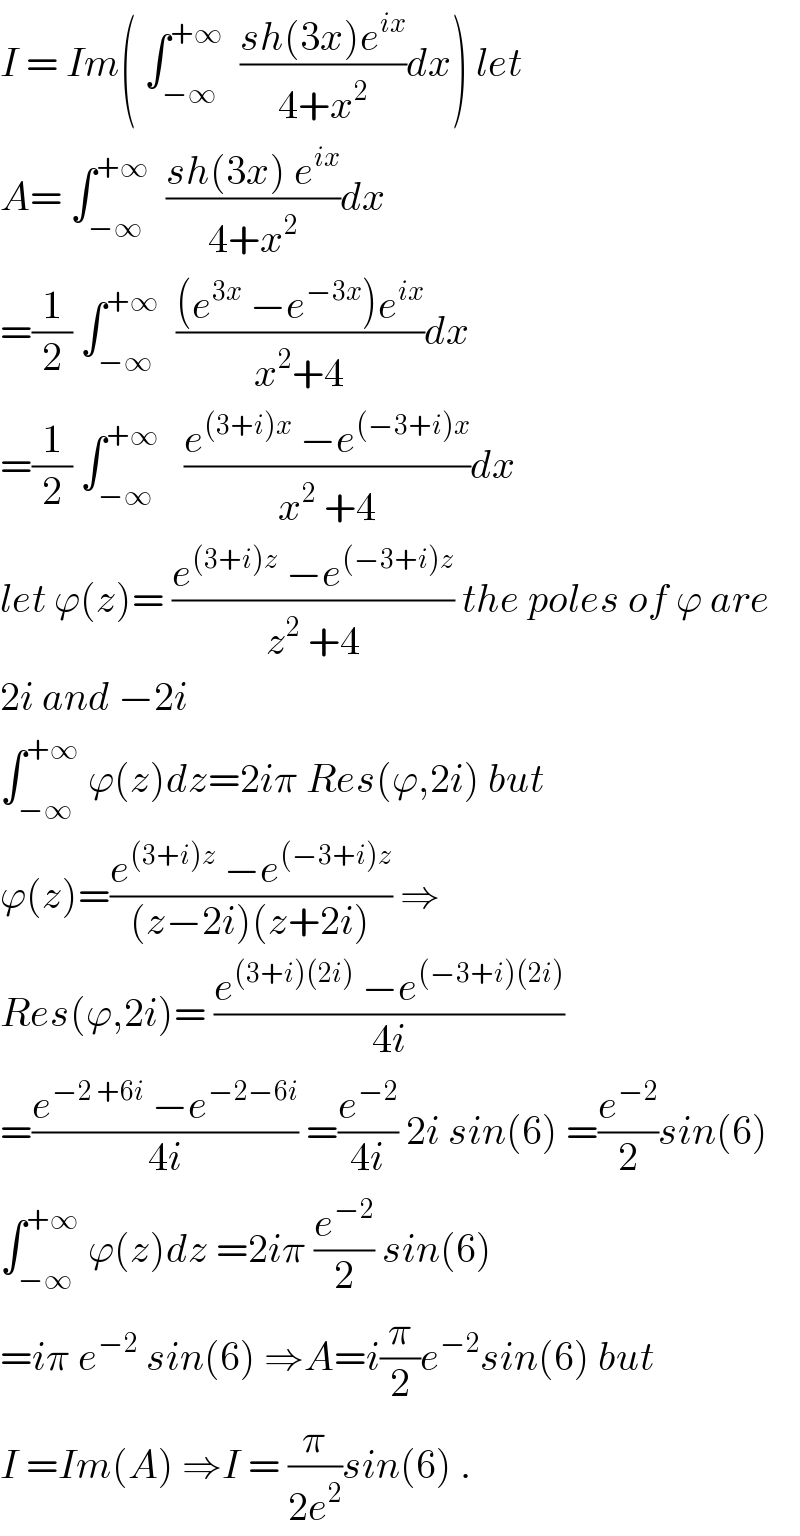 I = Im( ∫_(−∞) ^(+∞)   ((sh(3x)e^(ix) )/(4+x^2 ))dx) let  A= ∫_(−∞) ^(+∞)   ((sh(3x) e^(ix) )/(4+x^2 ))dx  =(1/2) ∫_(−∞) ^(+∞)   (((e^(3x)  −e^(−3x) )e^(ix) )/(x^2 +4))dx  =(1/2) ∫_(−∞) ^(+∞)    ((e^((3+i)x)  −e^((−3+i)x) )/(x^2  +4))dx  let ϕ(z)= ((e^((3+i)z)  −e^((−3+i)z) )/(z^2  +4)) the poles of ϕ are  2i and −2i   ∫_(−∞) ^(+∞)  ϕ(z)dz=2iπ Res(ϕ,2i) but  ϕ(z)=((e^((3+i)z)  −e^((−3+i)z) )/((z−2i)(z+2i))) ⇒  Res(ϕ,2i)= ((e^((3+i)(2i))  −e^((−3+i)(2i)) )/(4i))  =((e^(−2 +6i)  −e^(−2−6i) )/(4i)) =(e^(−2) /(4i)) 2i sin(6) =(e^(−2) /2)sin(6)  ∫_(−∞) ^(+∞)  ϕ(z)dz =2iπ (e^(−2) /2) sin(6)  =iπ e^(−2)  sin(6) ⇒A=i(π/2)e^(−2) sin(6) but   I =Im(A) ⇒I = (π/(2e^2 ))sin(6) .  